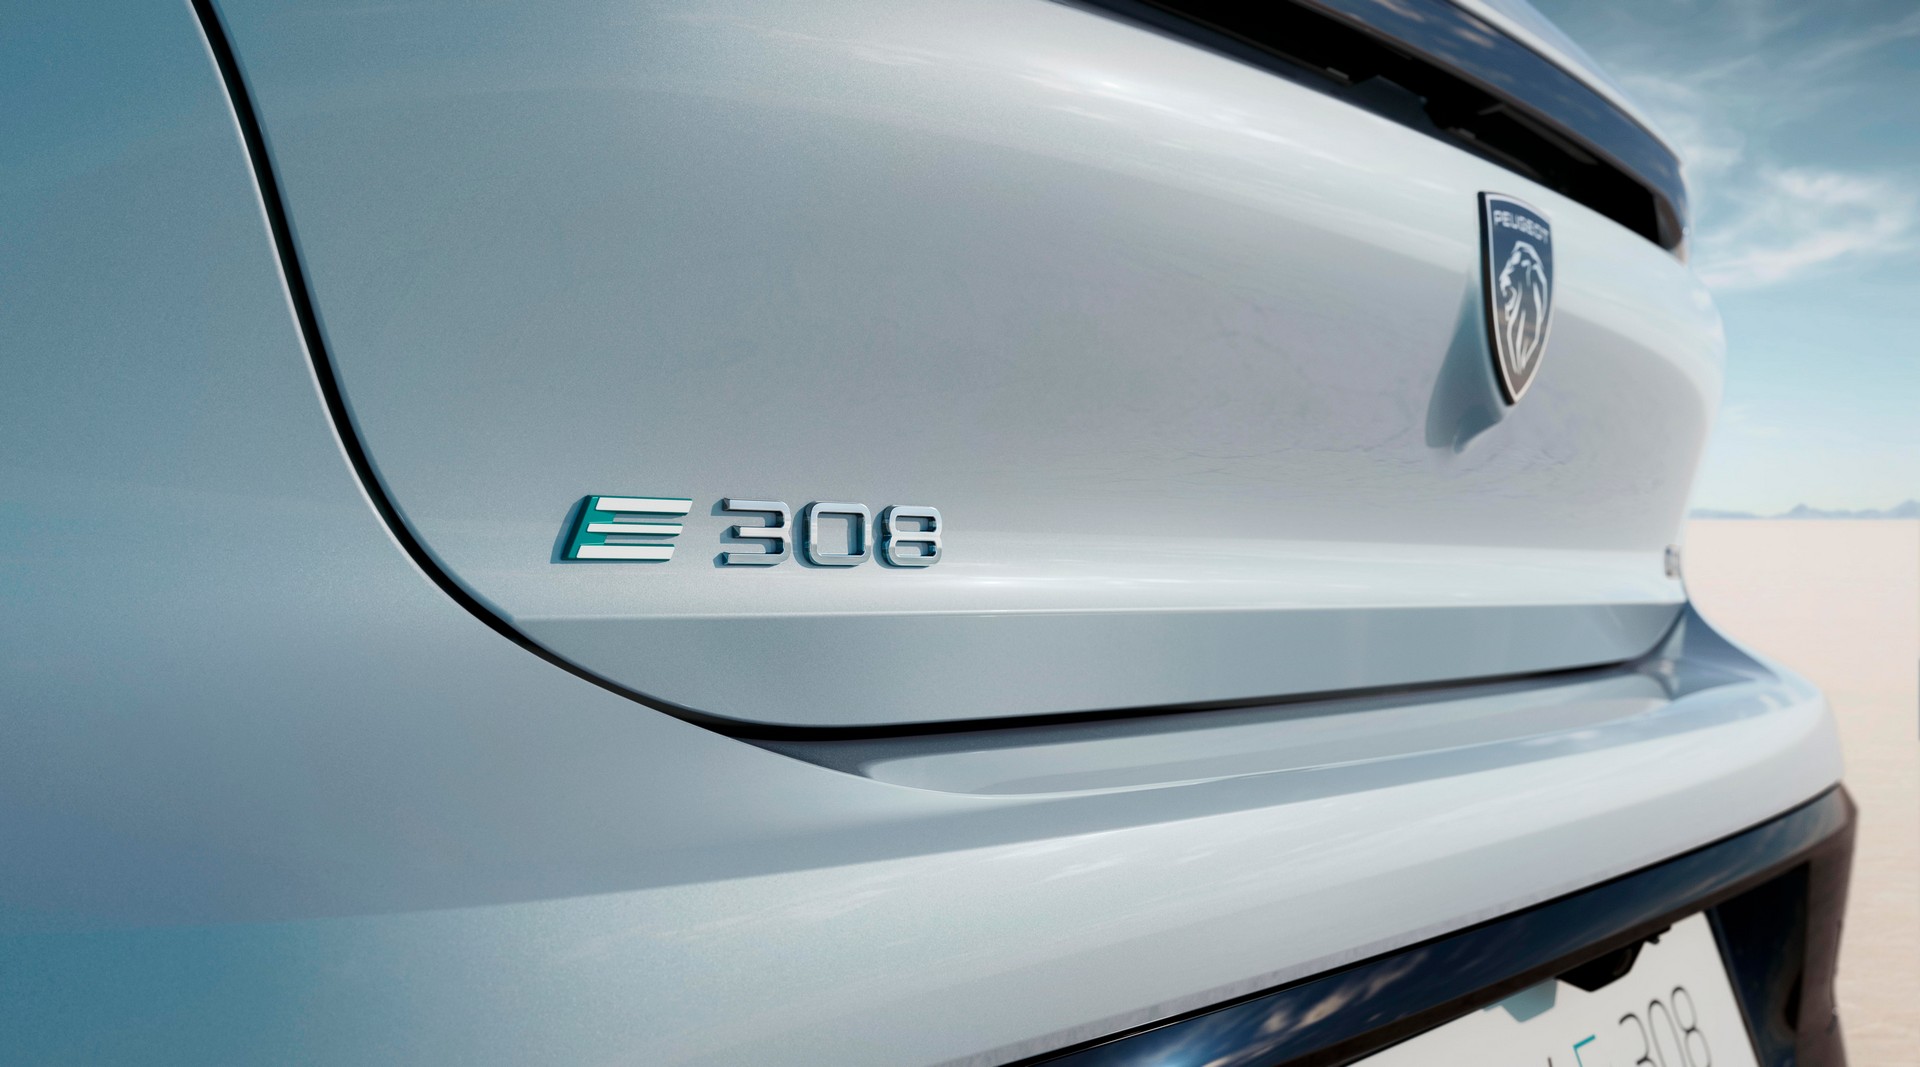 Bộ đôi xe điện Peugeot E-308 và E-308 SW 2023 ra mắt với kiểu dáng bắt mắt peugeot-e-308-4.jpg